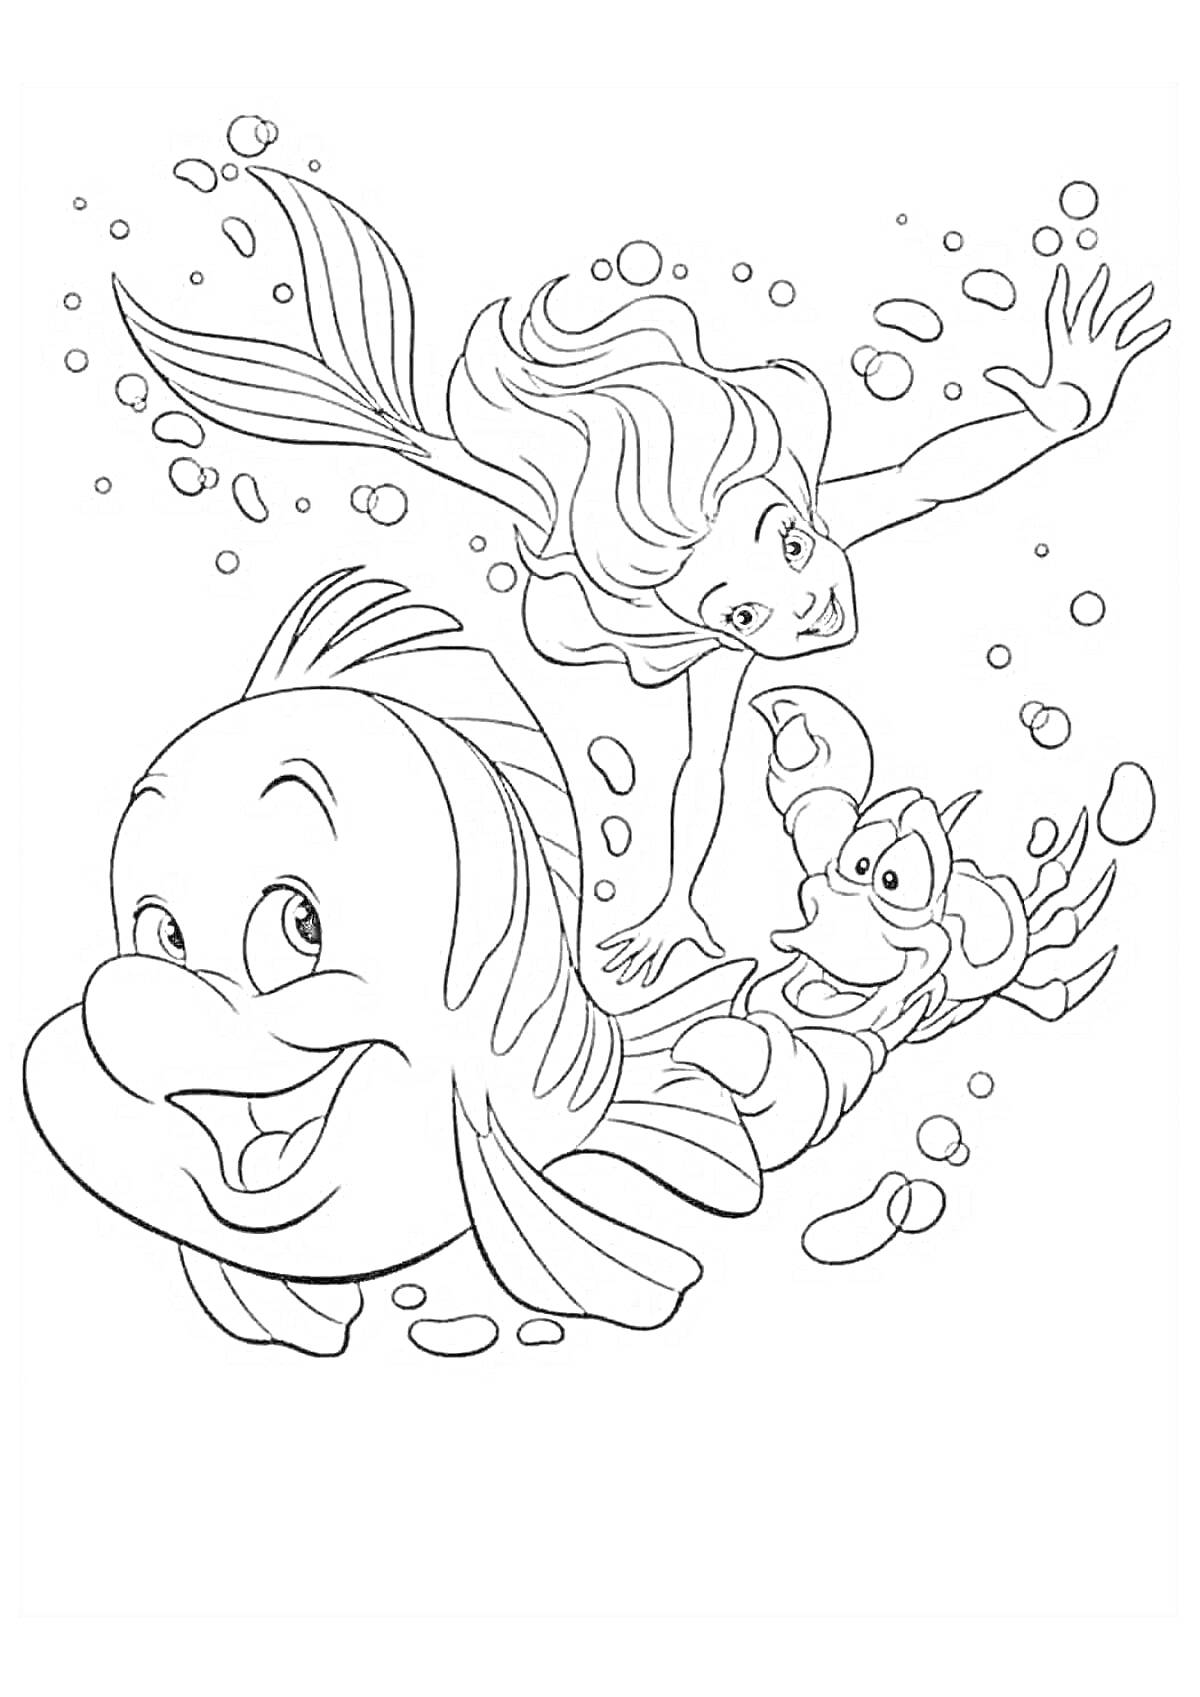 Раскраска Русалочка с друзьями под водой, пузырьки, рыбка, краб